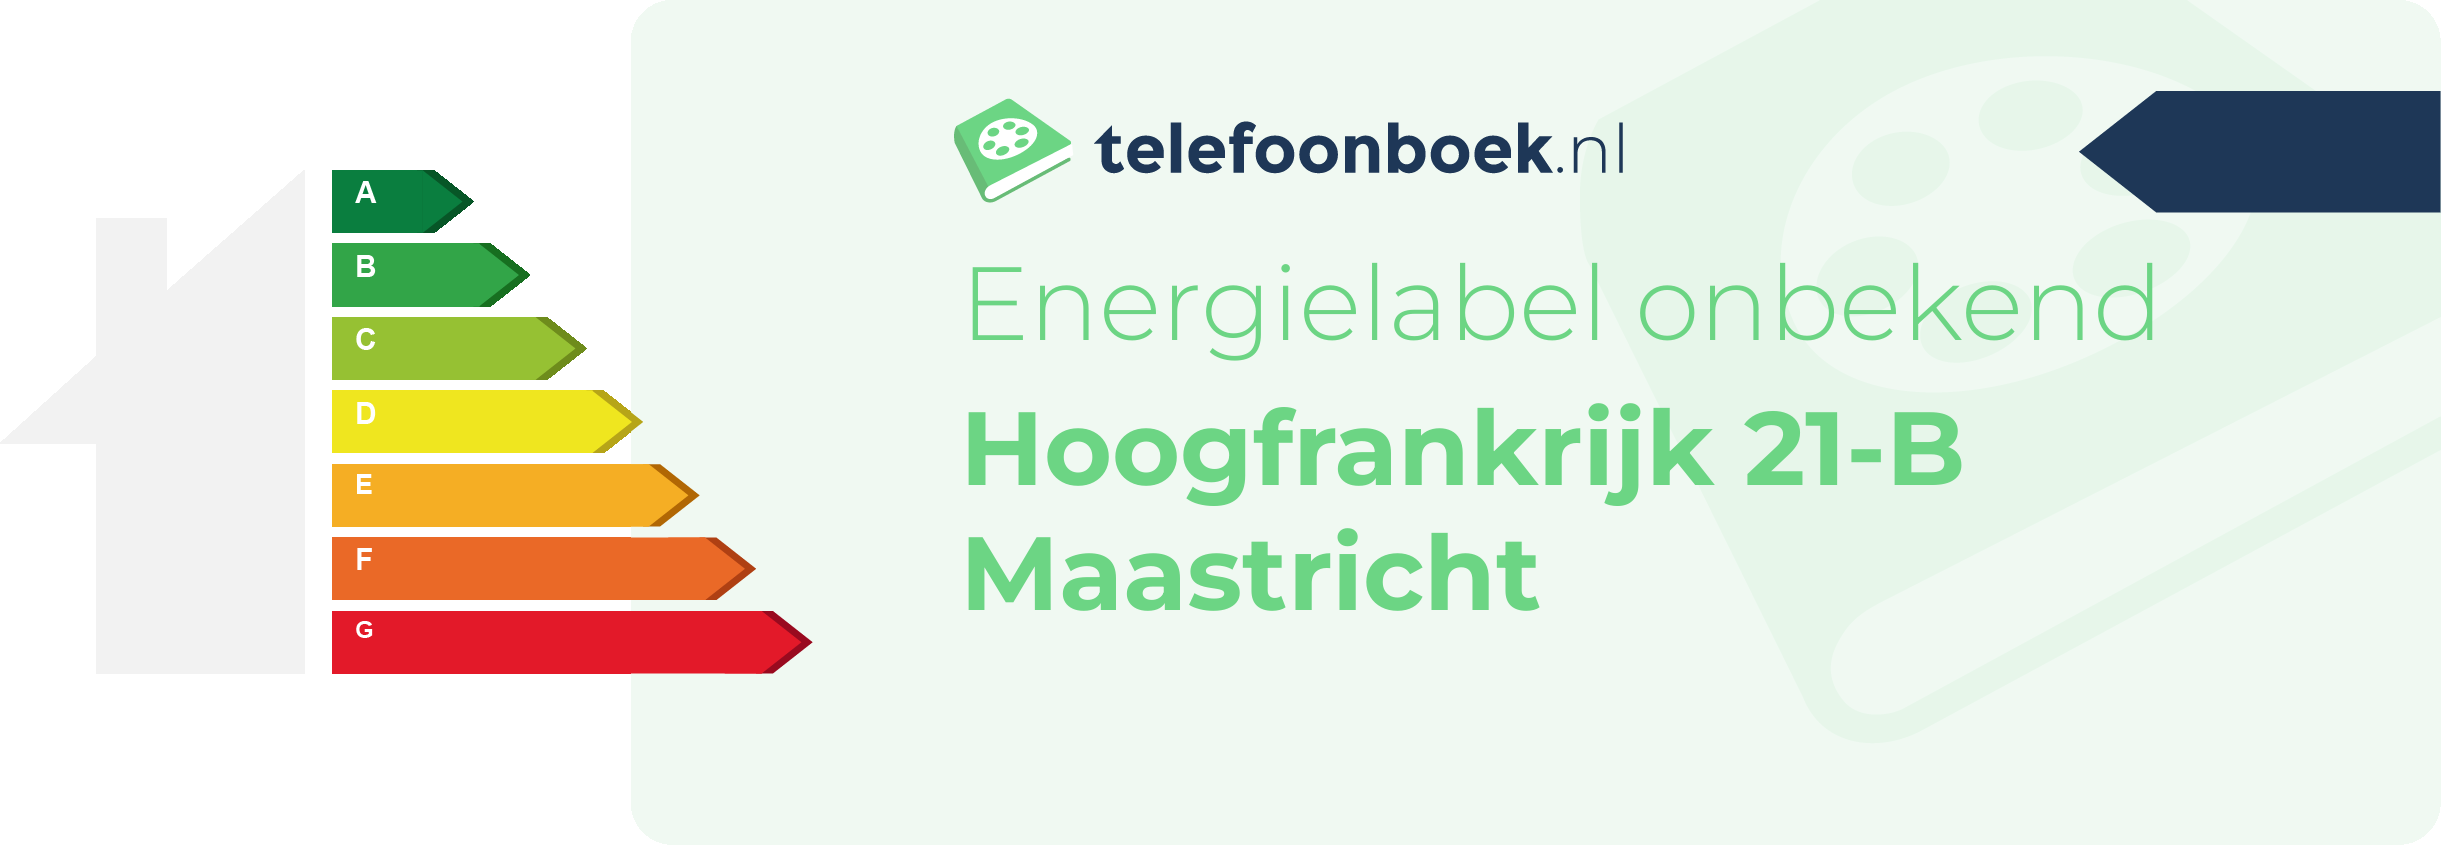 Energielabel Hoogfrankrijk 21-B Maastricht